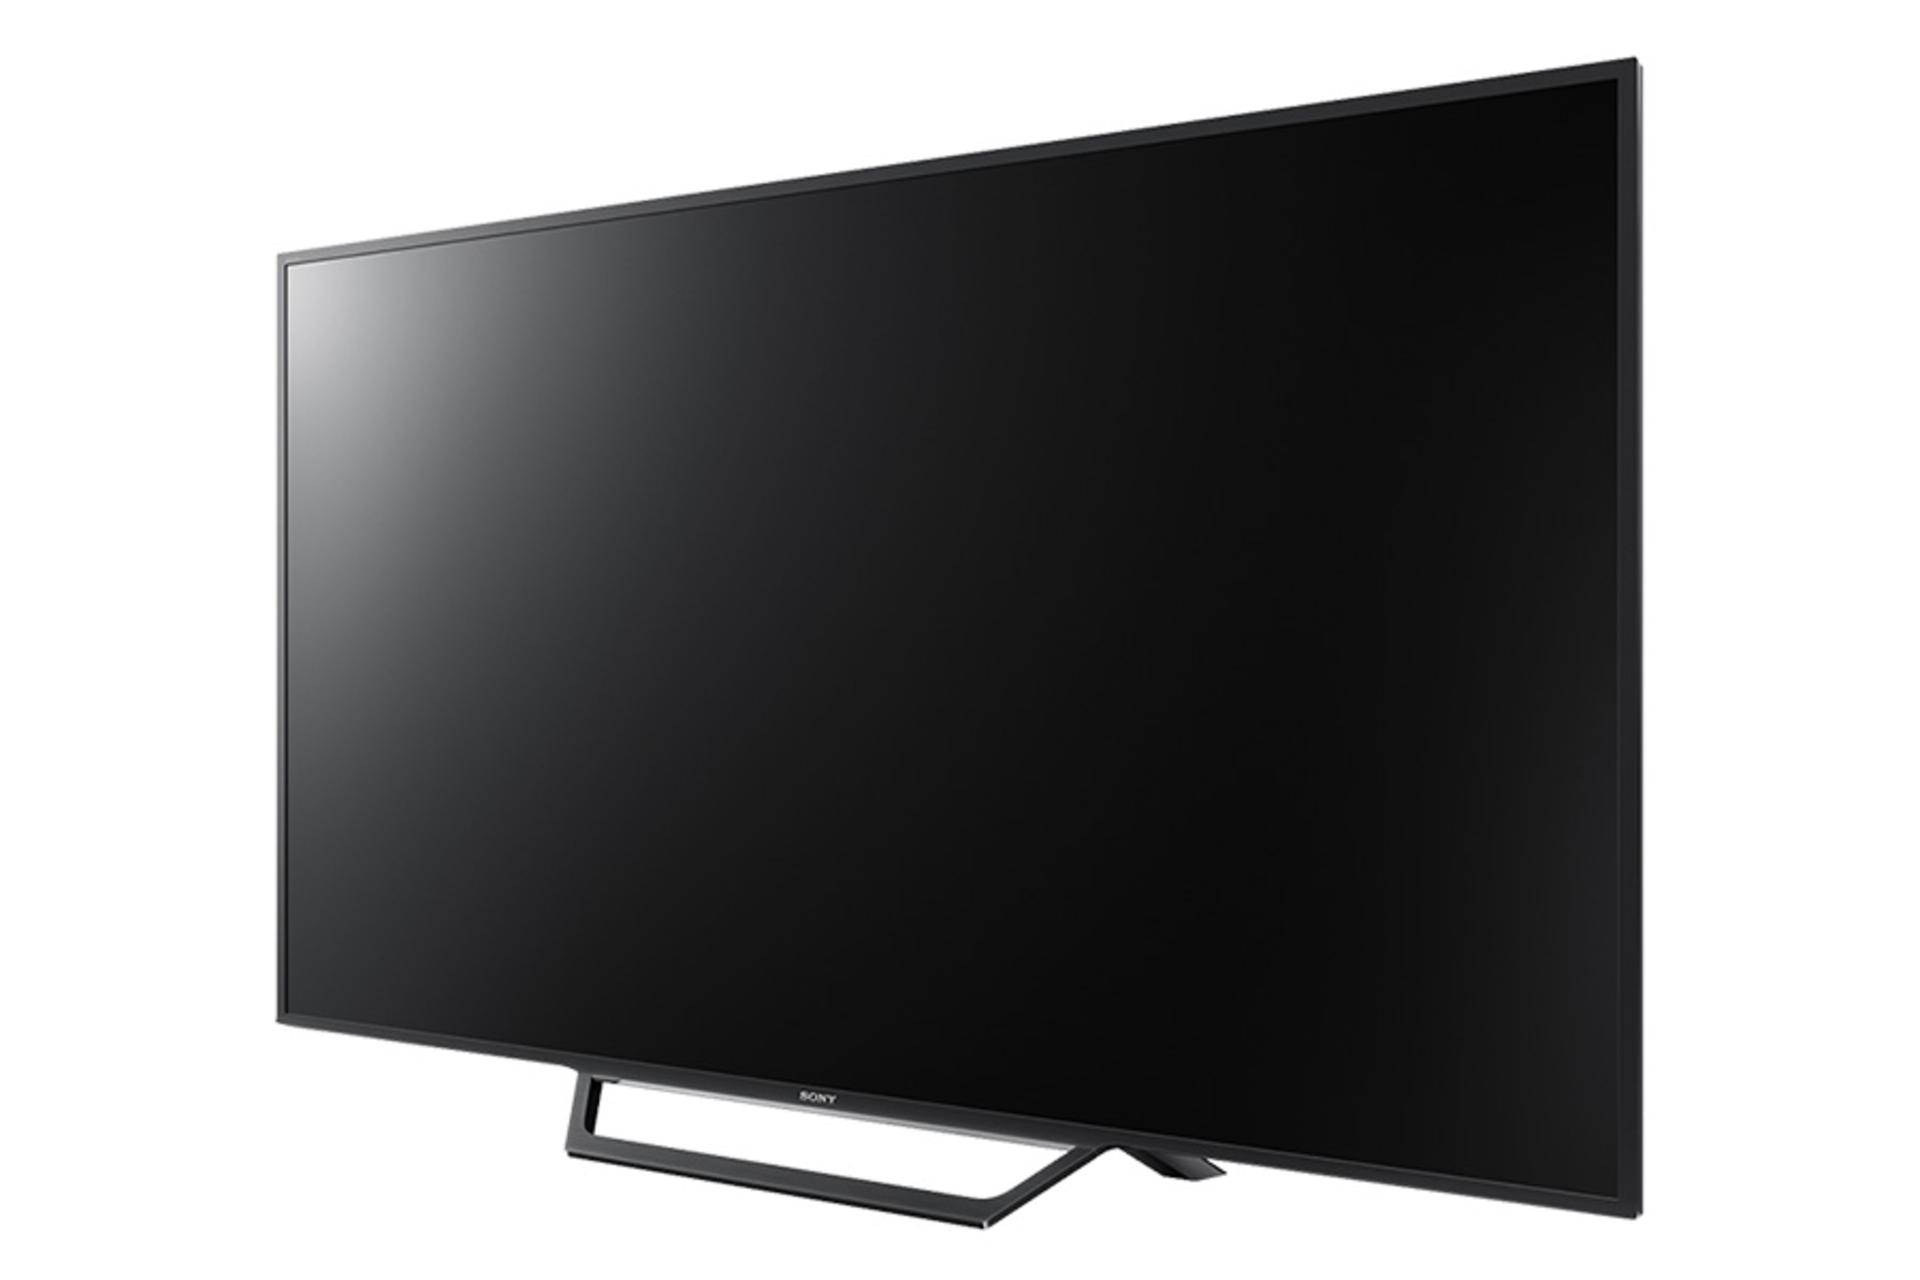 نمای نیم رخ تلویزیون سونی W650D مدل 20 اینچ با صفحه خاموش